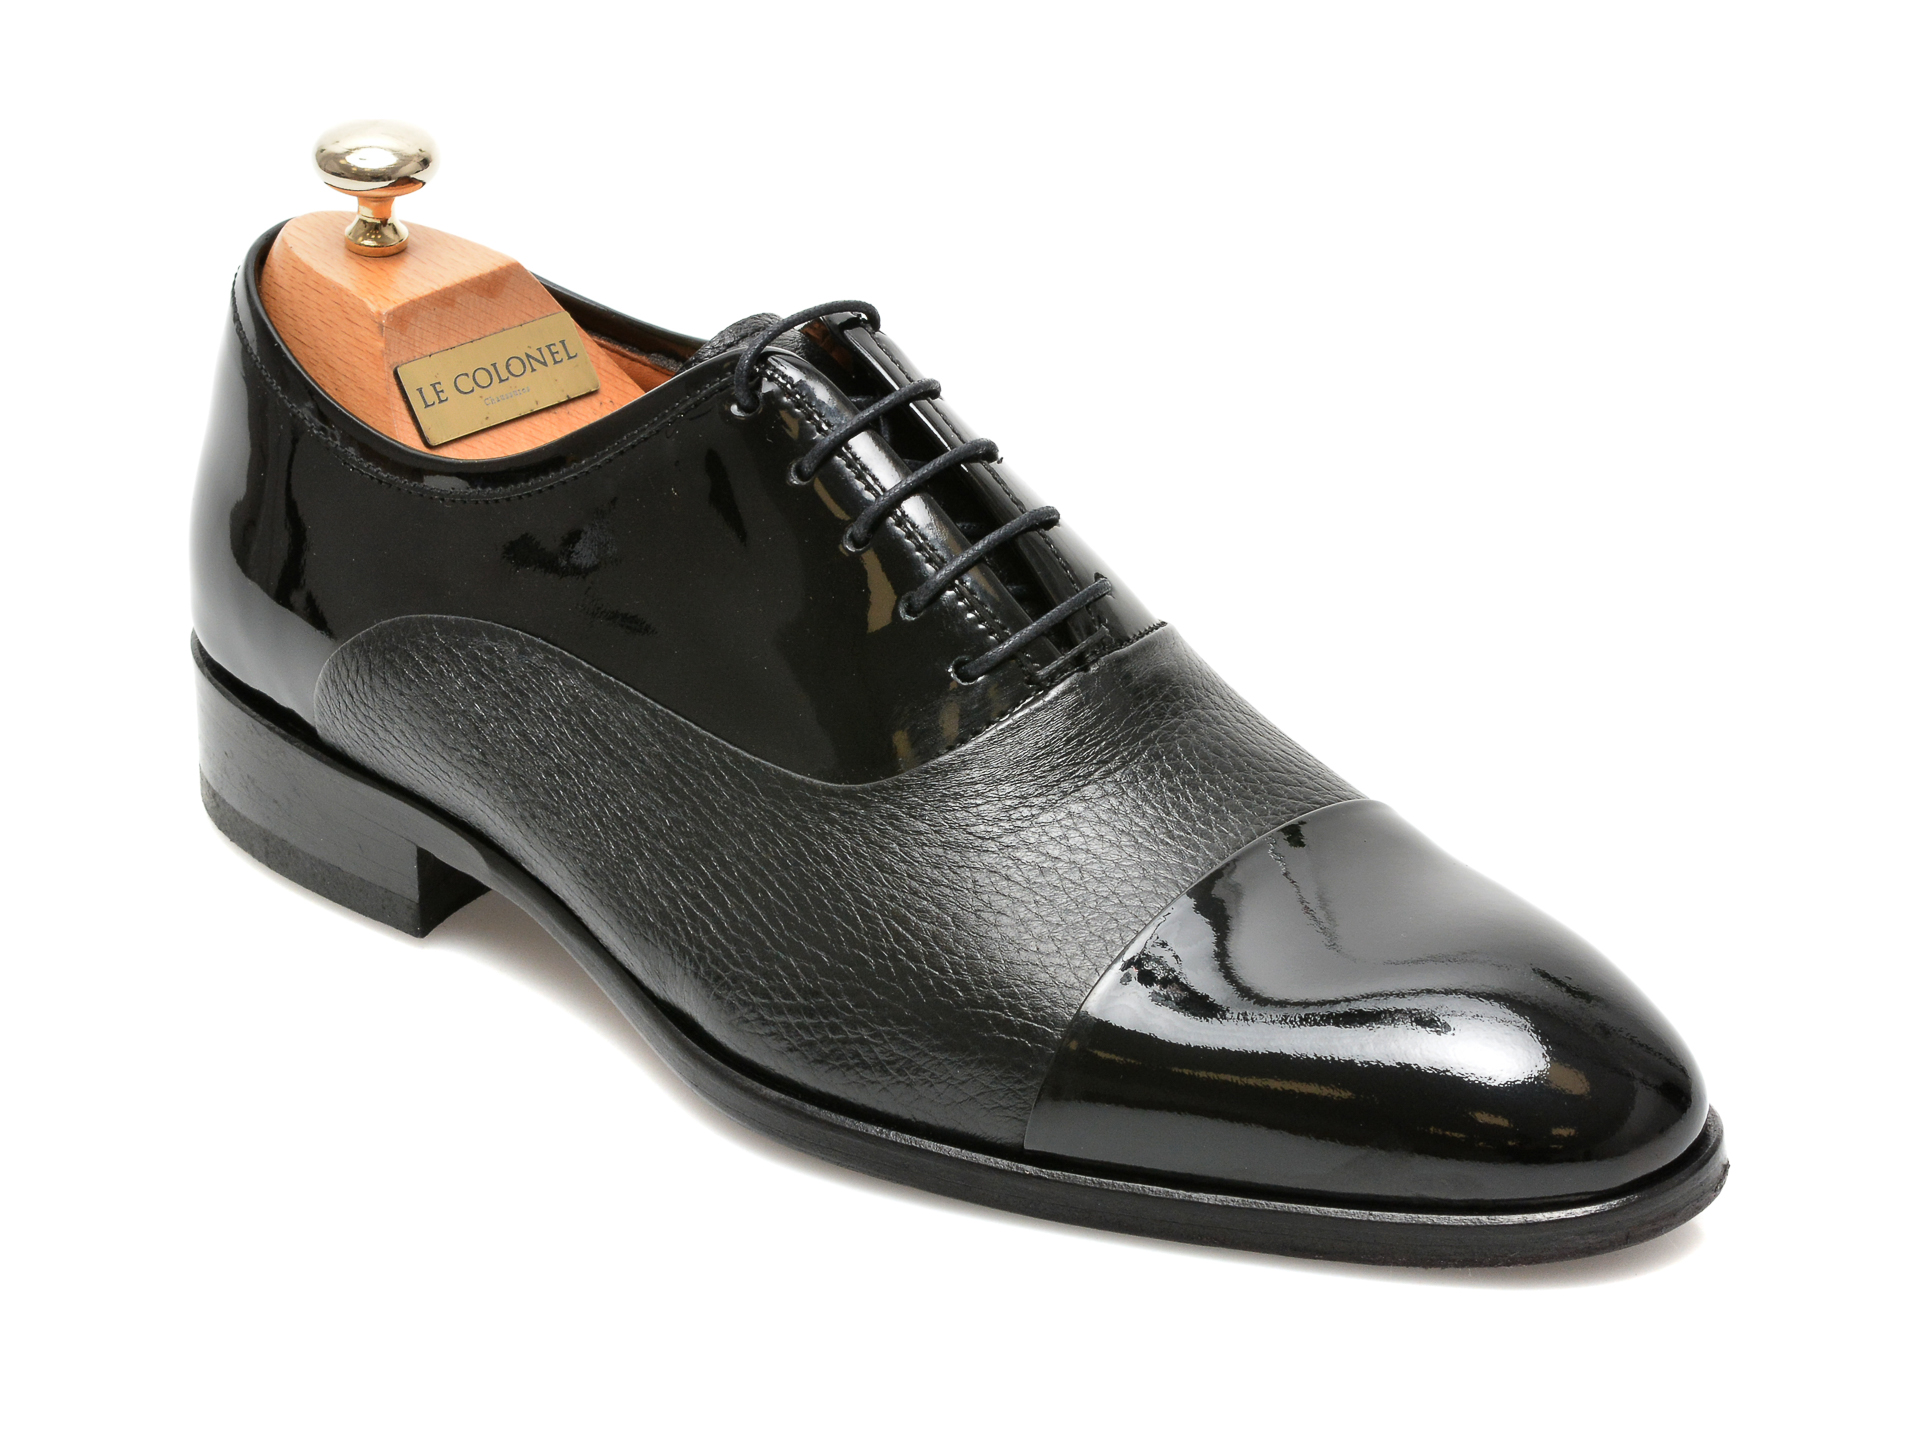 Pantofi LE COLONEL negri, 327117, din piele naturala lacuita imagine reduceri black friday 2021 Le Colonel